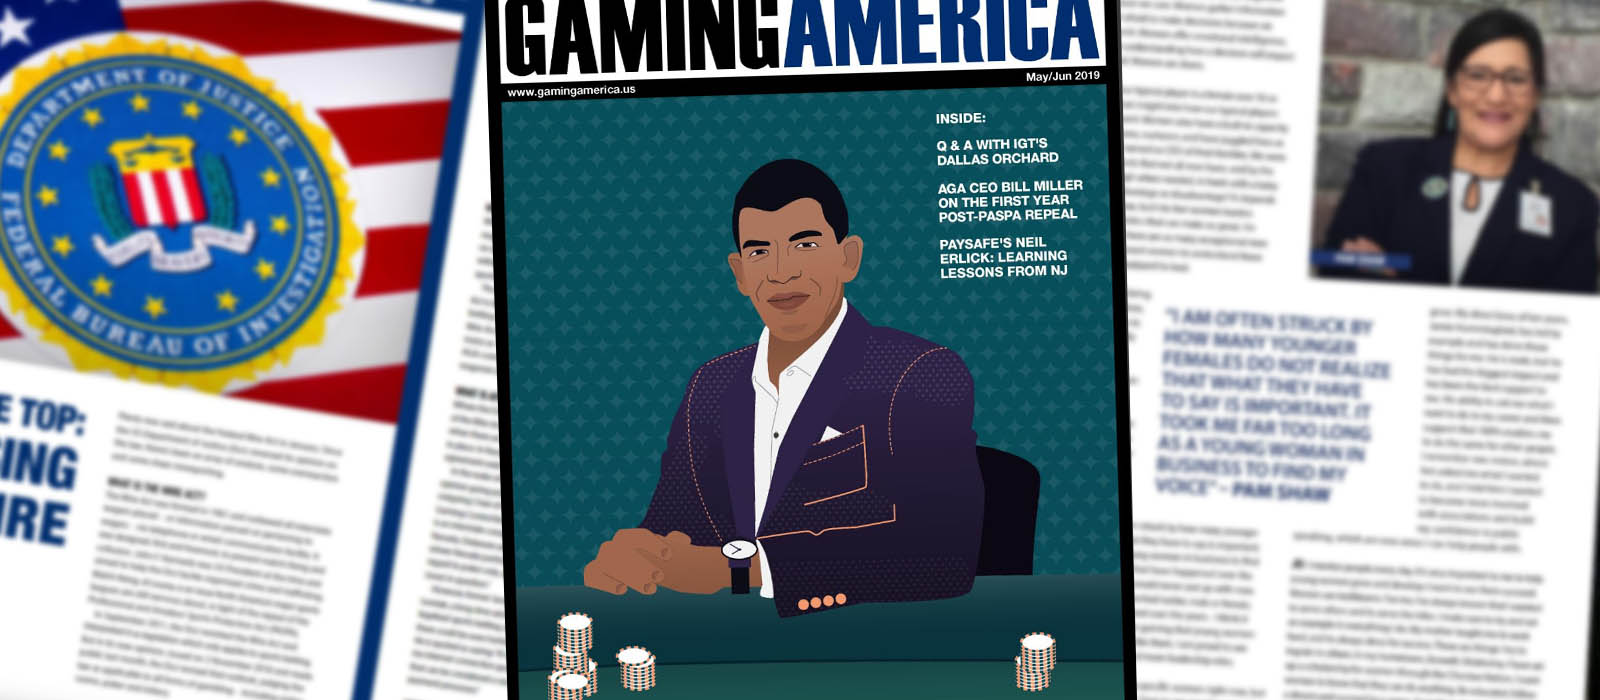 Gaming America may-June 2019